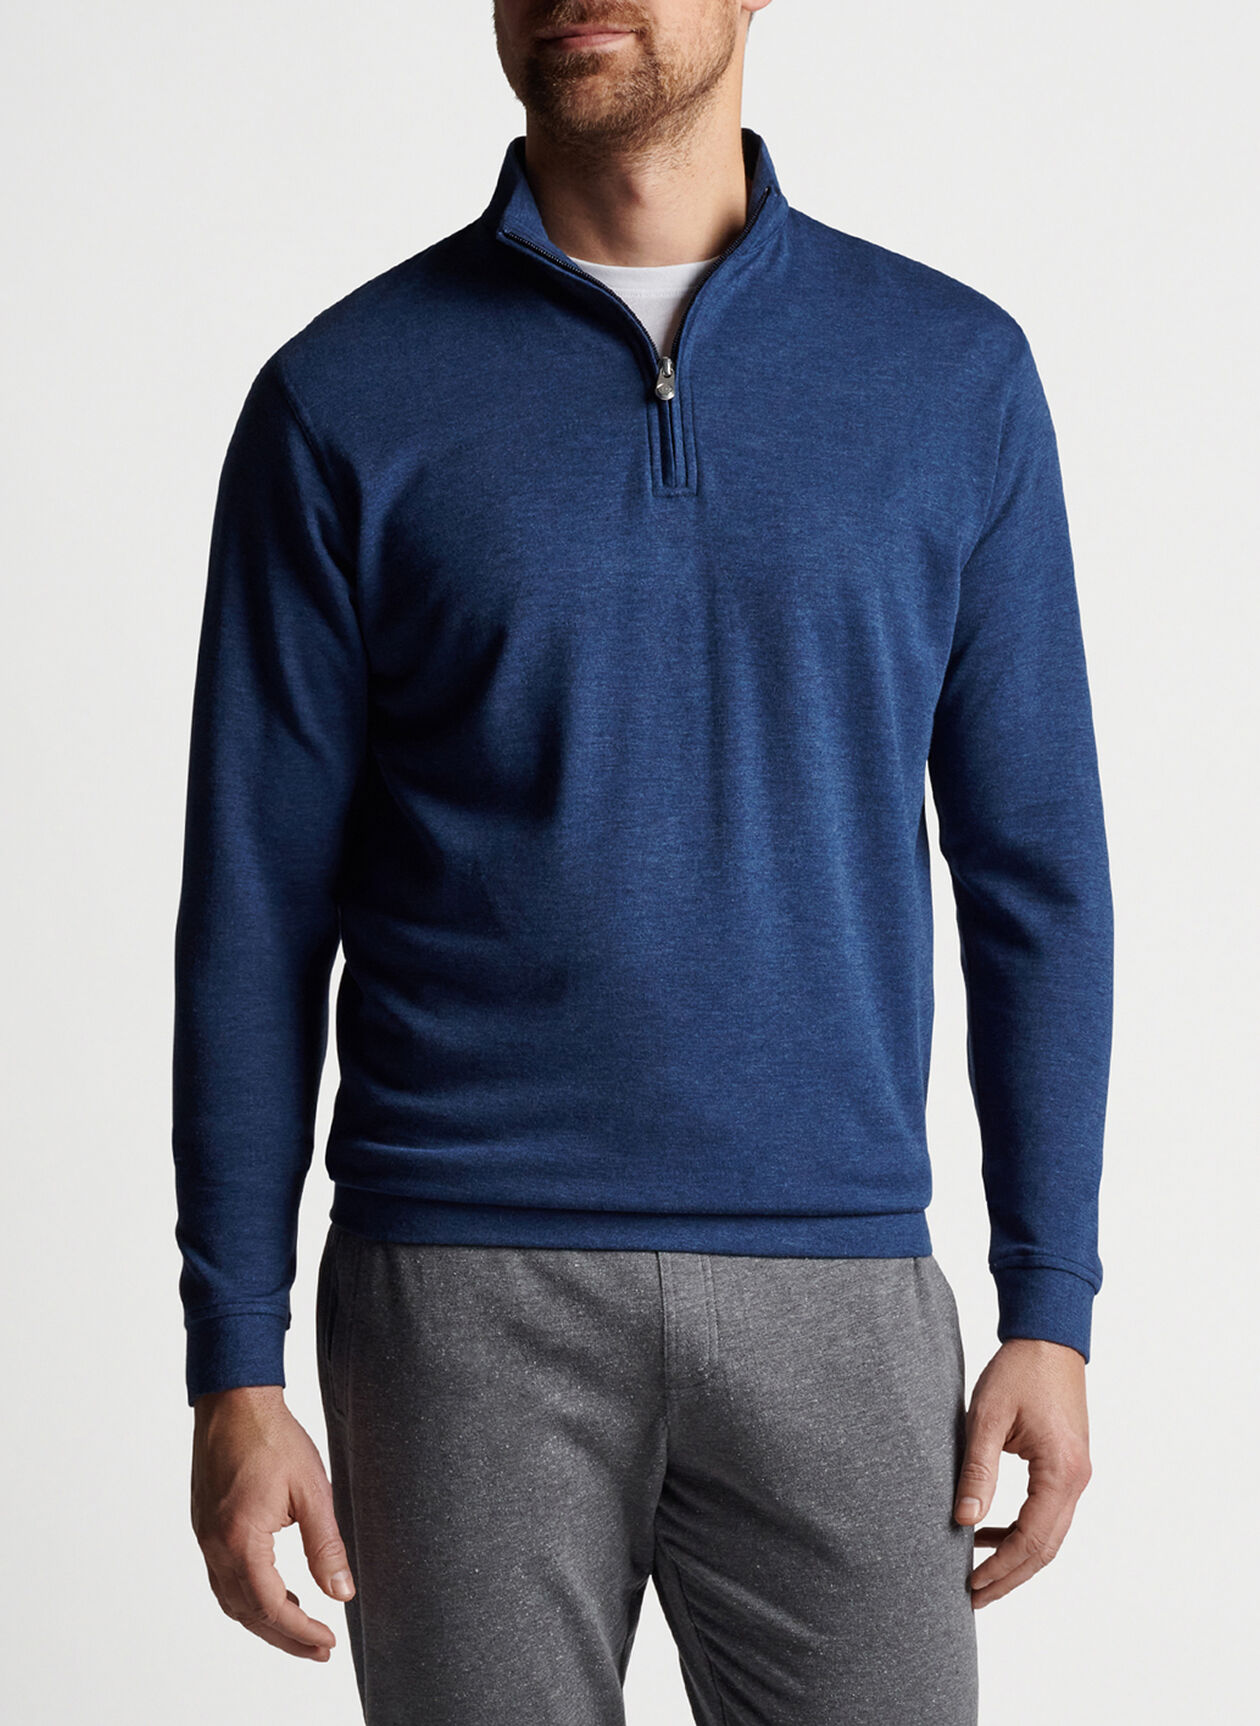 Crown Comfort Interlock Quarter-Zip | Men's Pullovers & T-Shirts ...